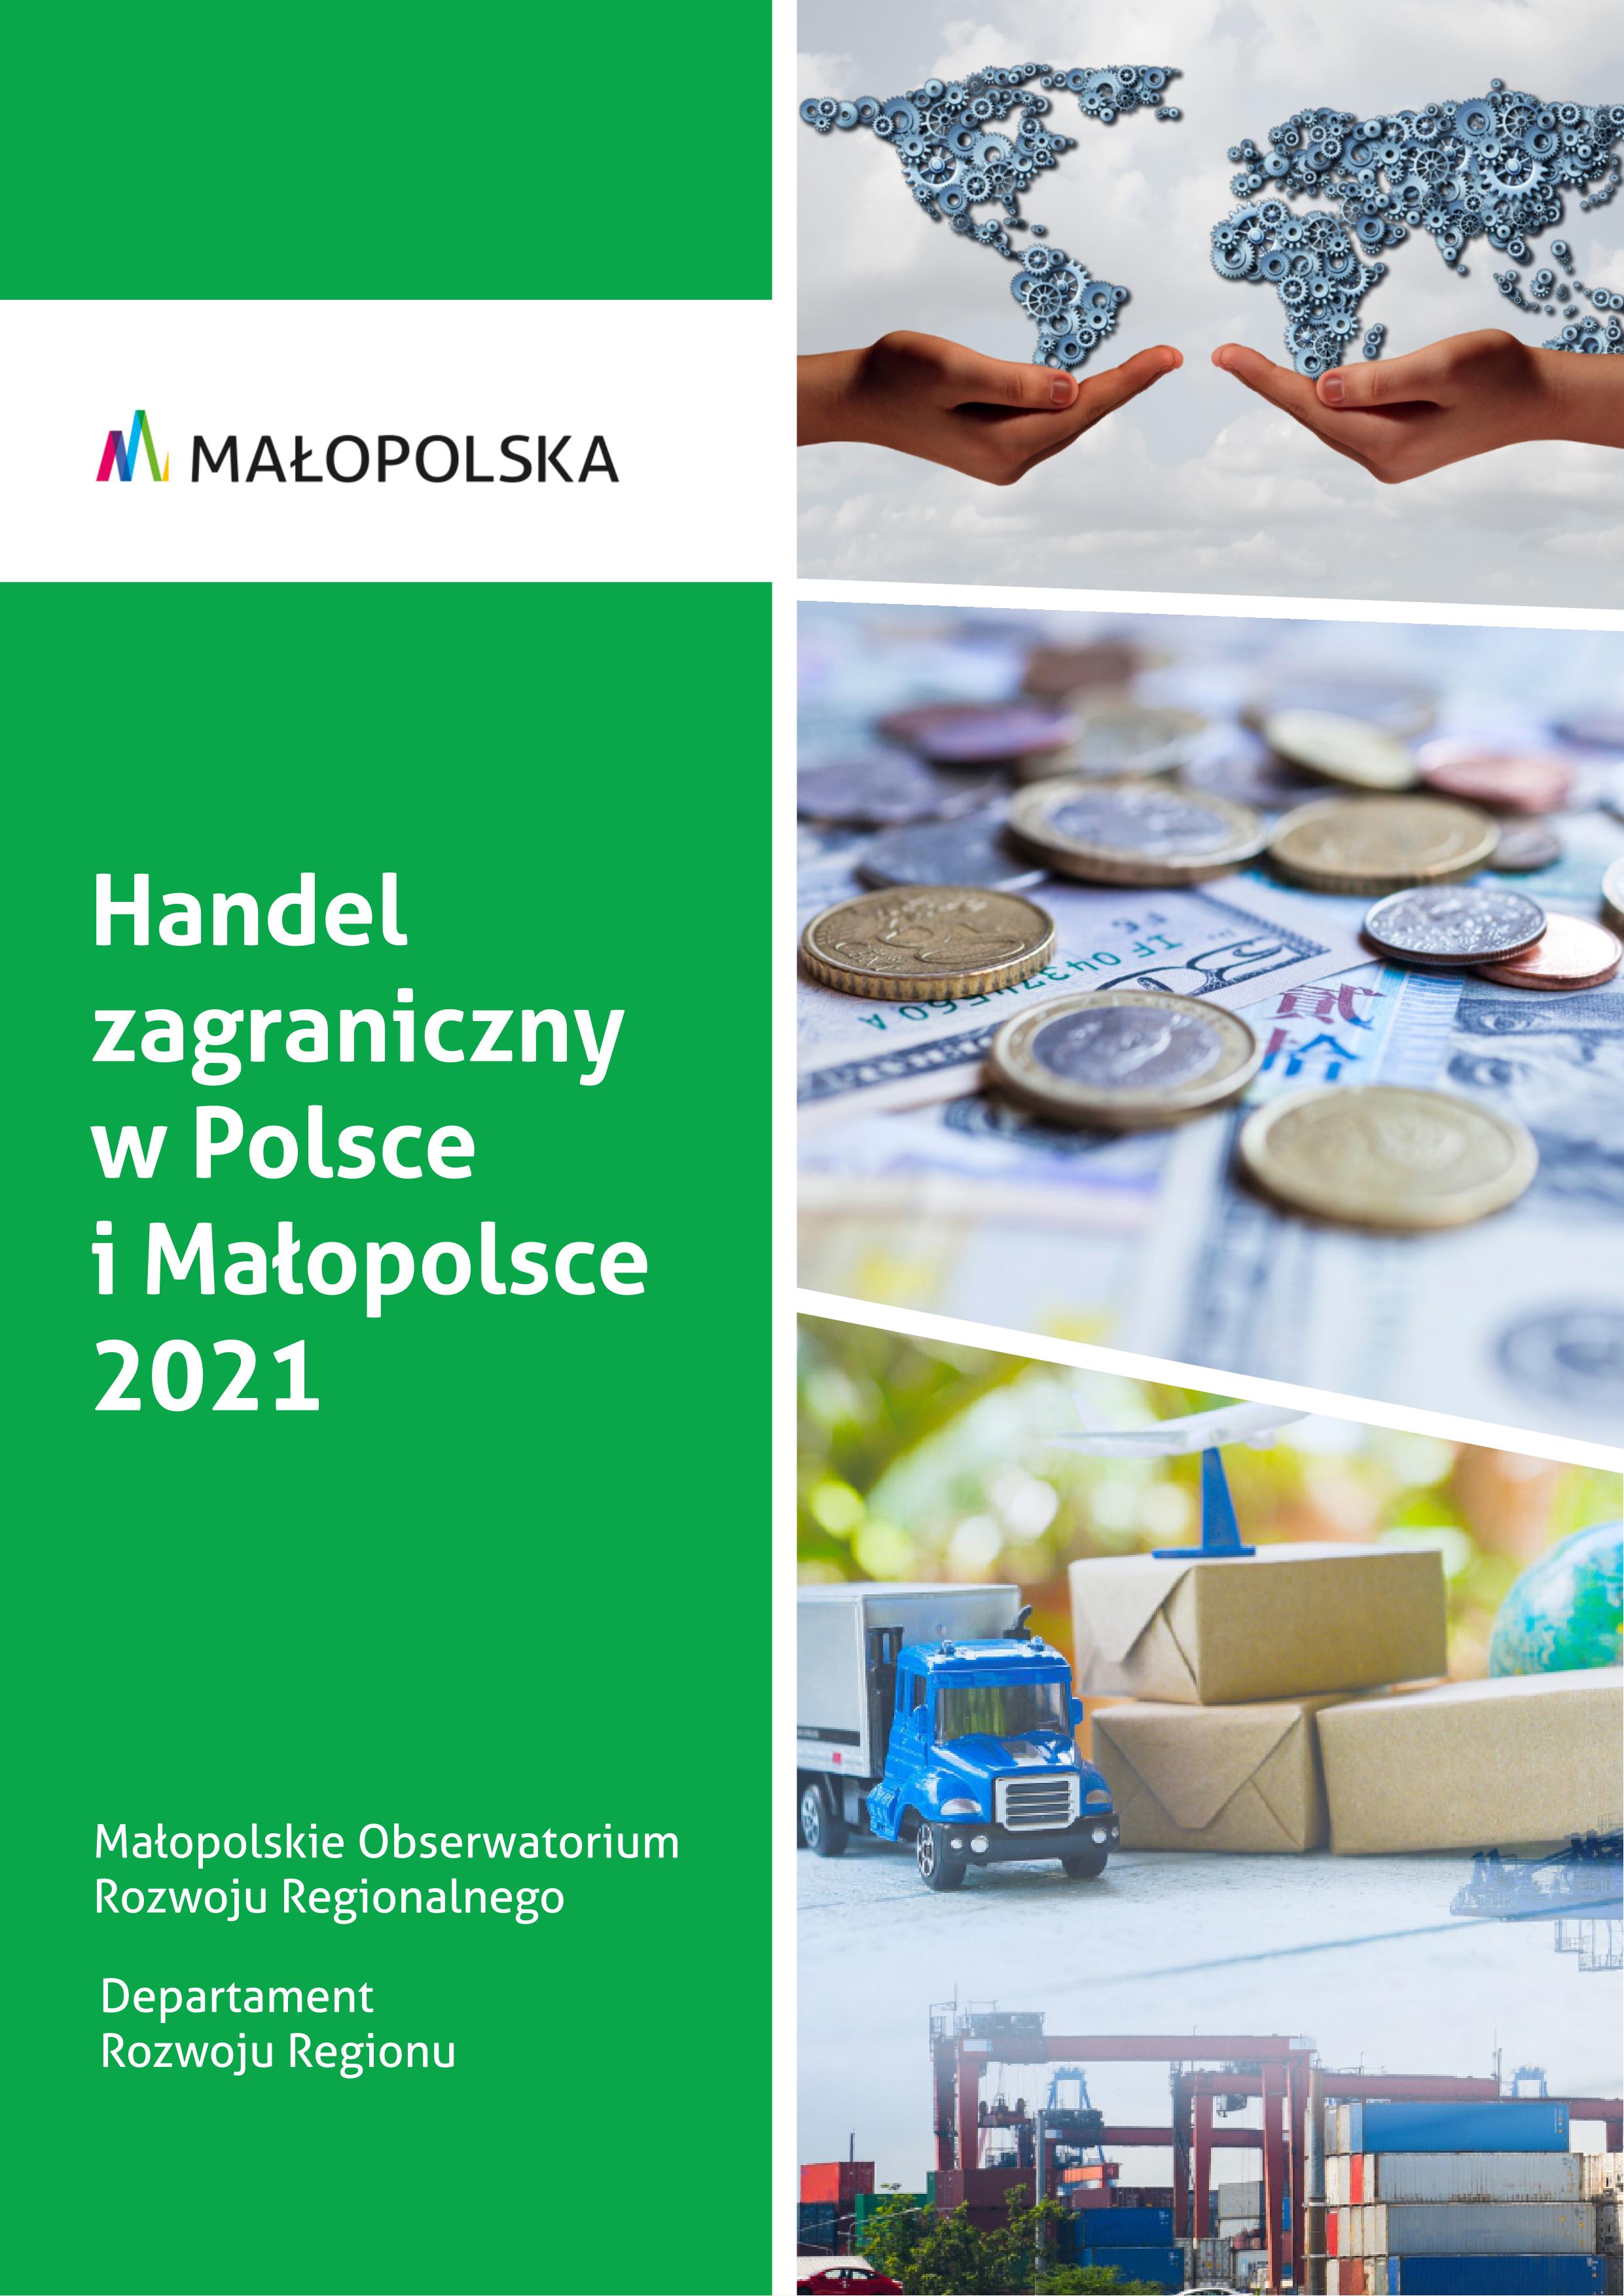 Handel zagraniczny w Polsce i Małopolsce 2021